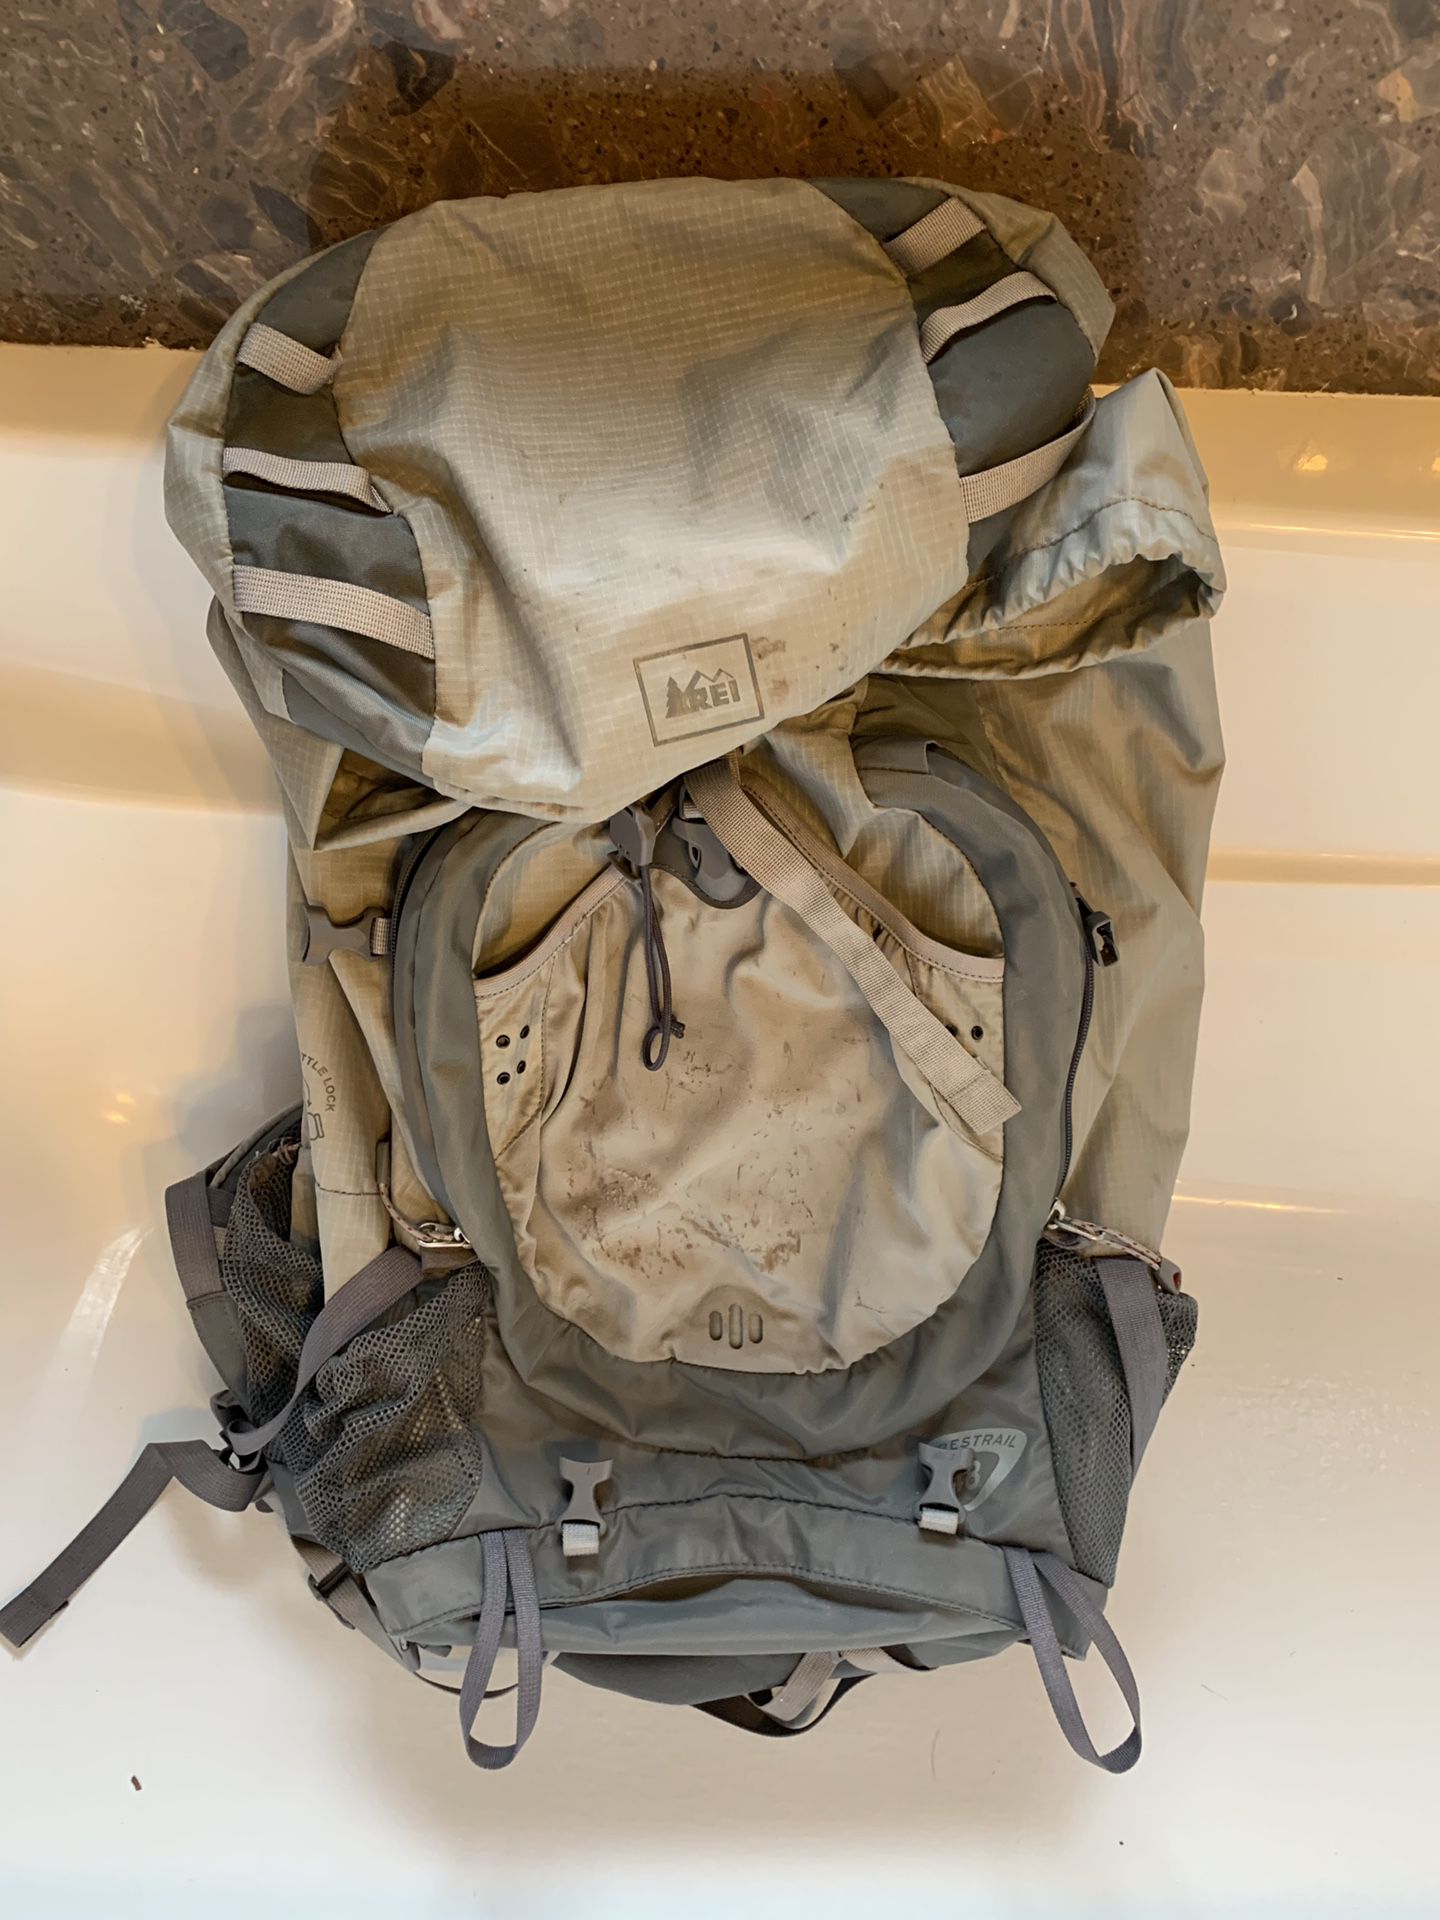 Men’s REI Cresttrail 48 liter backpack - well loved